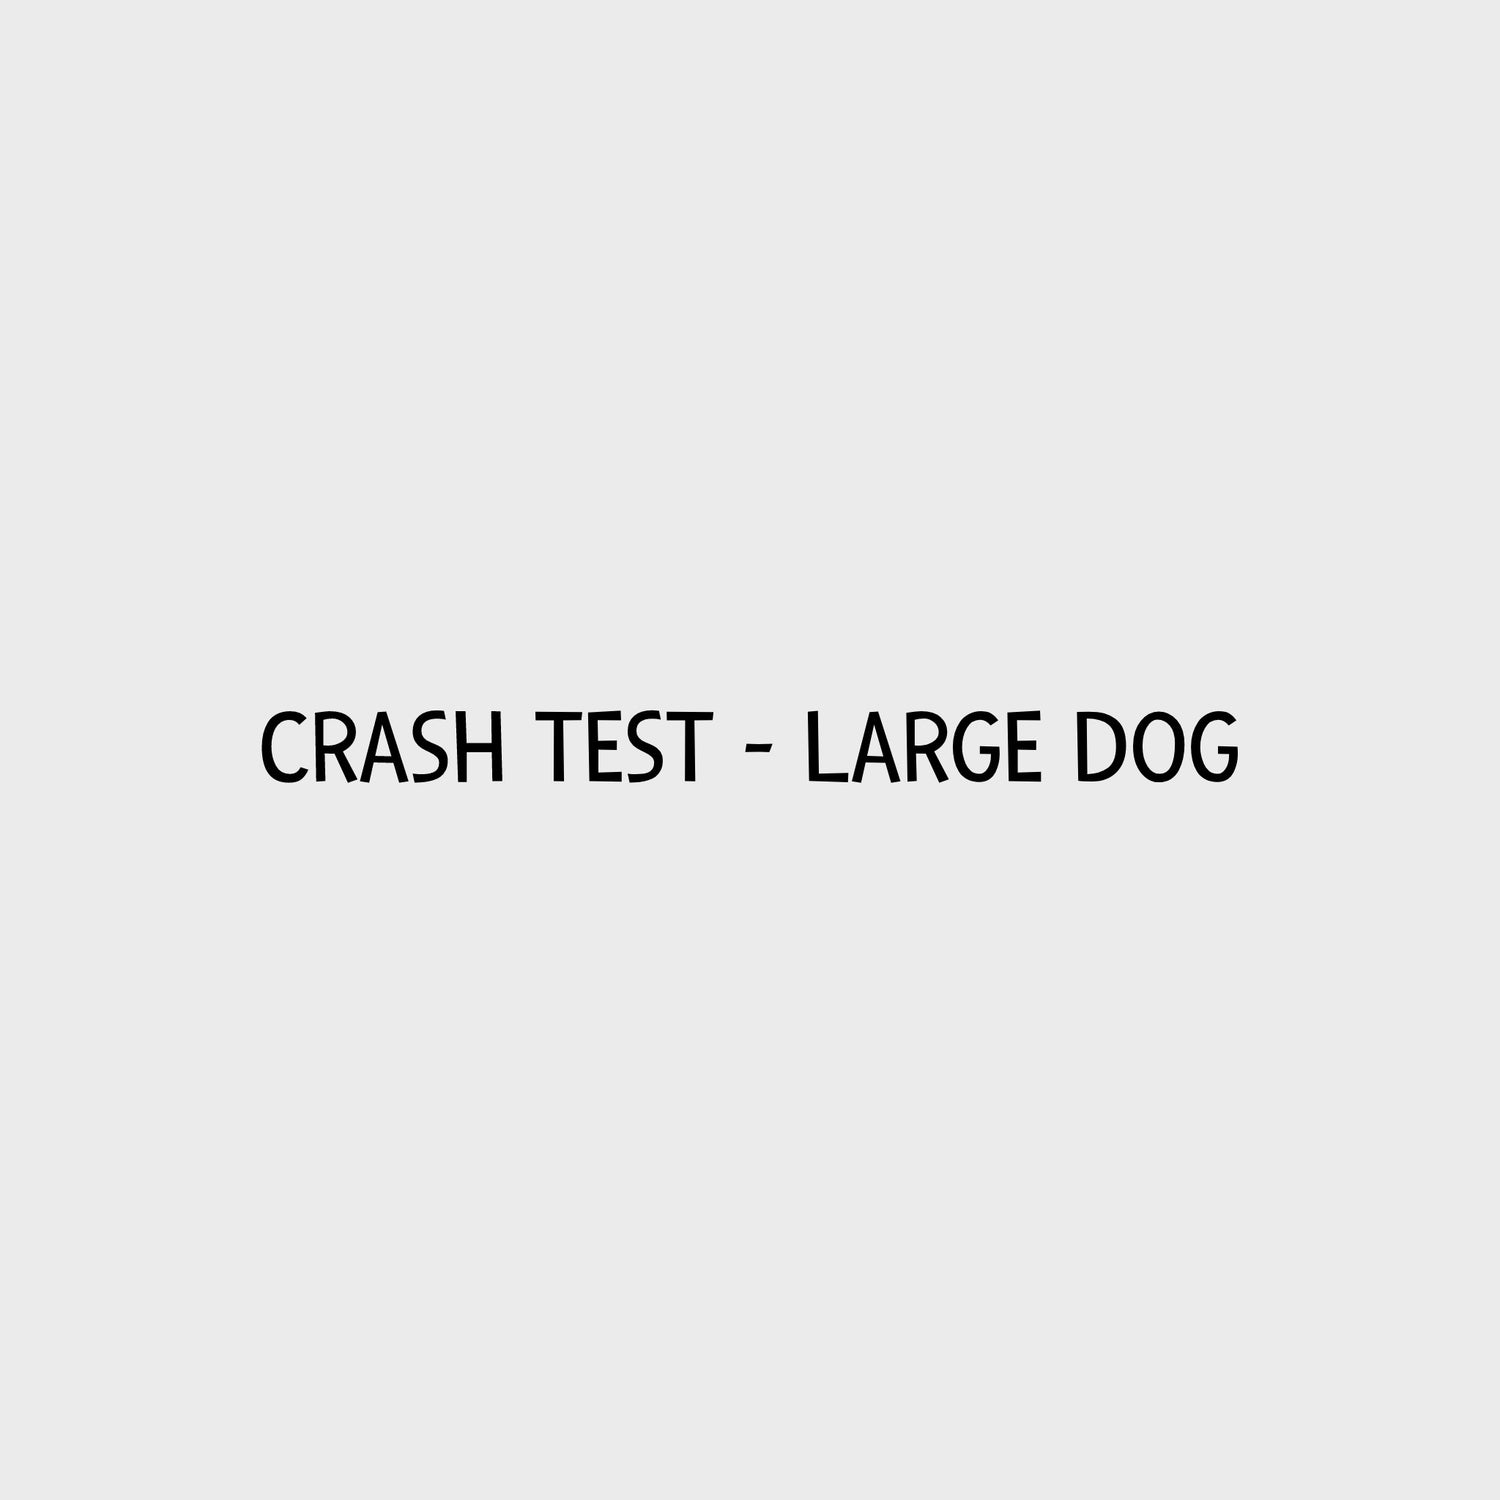 Video - Kurgo Impact Harness - Crash Test Large Dog